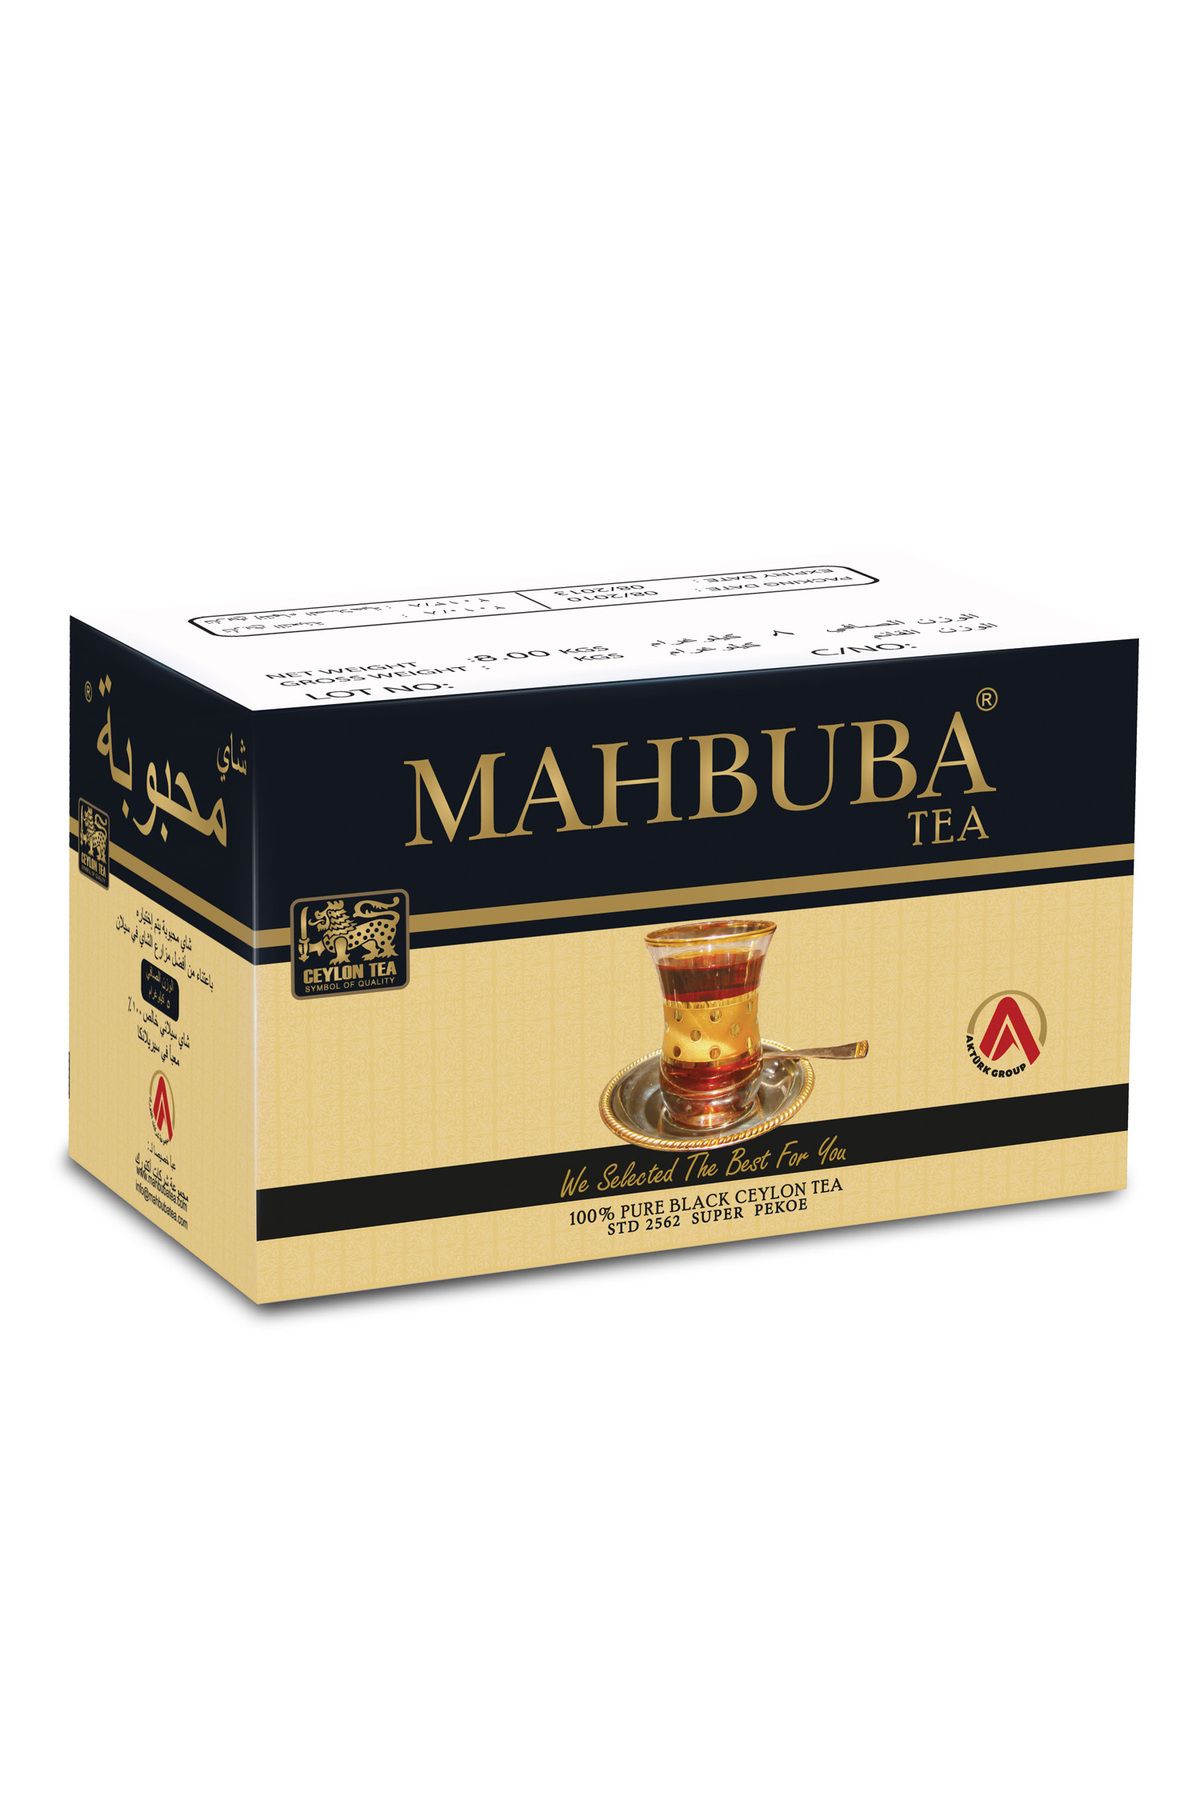 Mahbuba Tea Std 2562 Super Pekoe Ithal Seylan Sri Lanka Ceylon Kaçak Siyah Yaprak Çayı 5kg